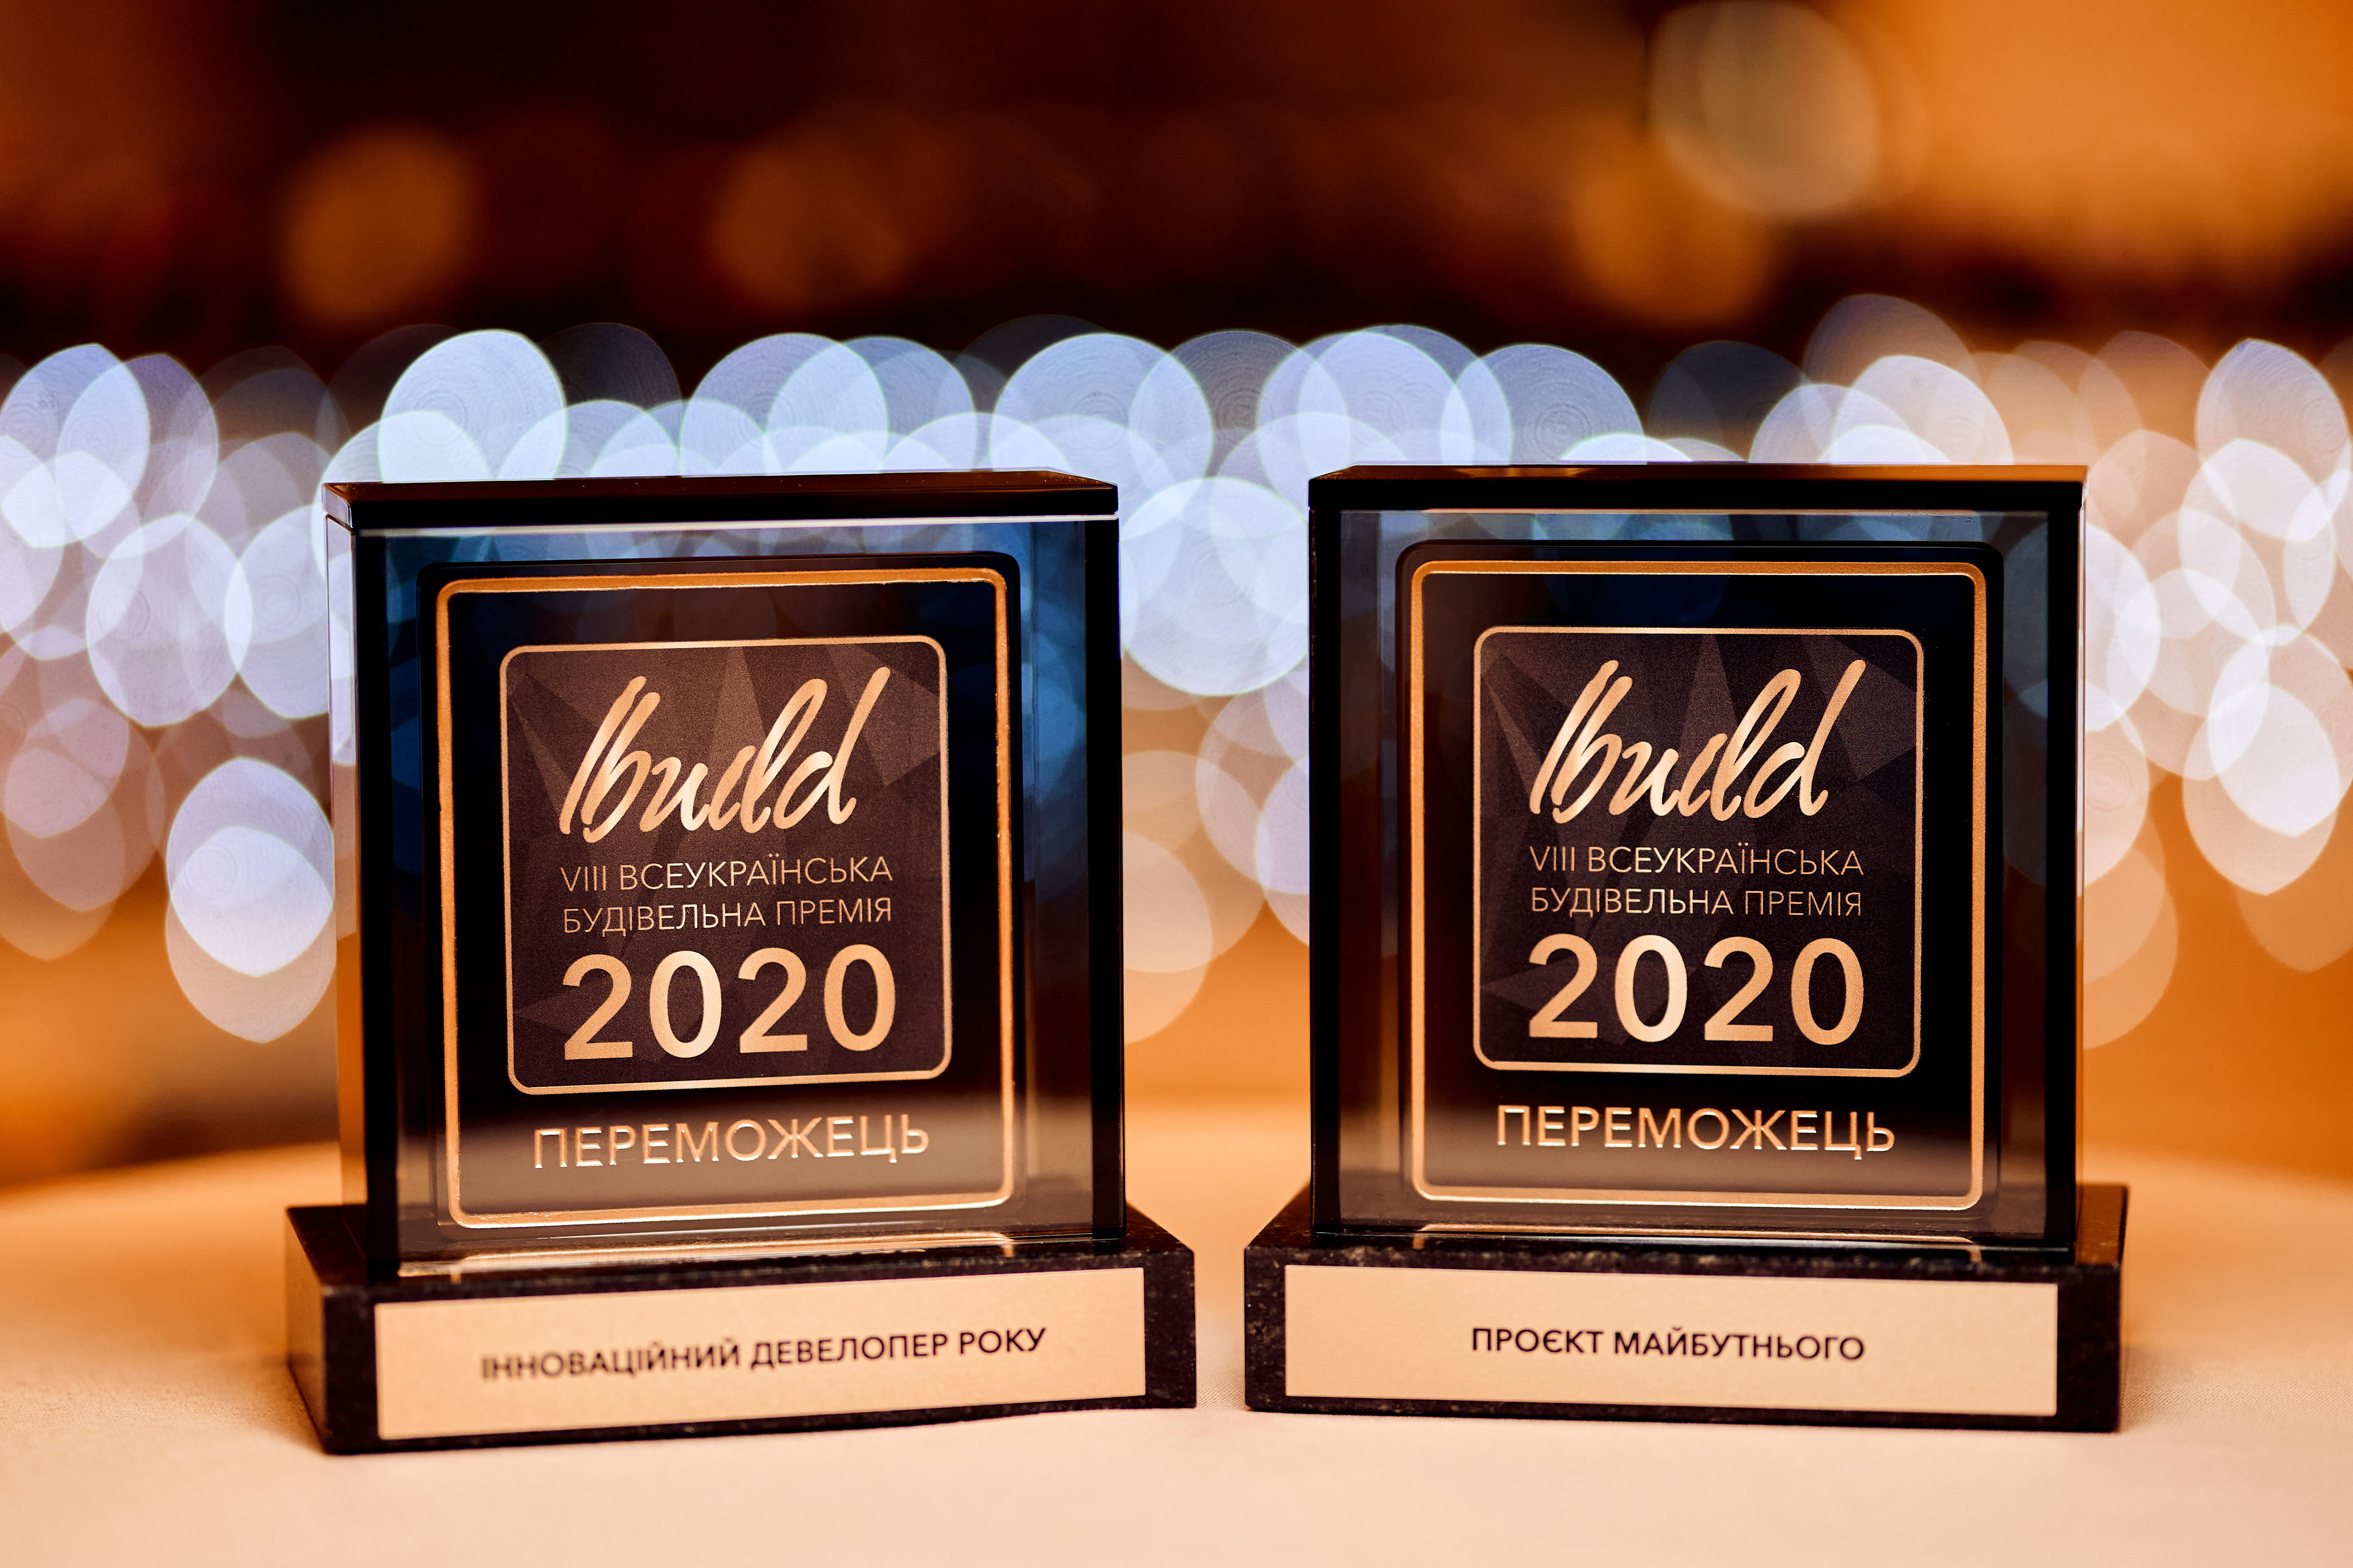 Инновации с прицелом на будущее - группа компаний DIM получила две награды Ibuild